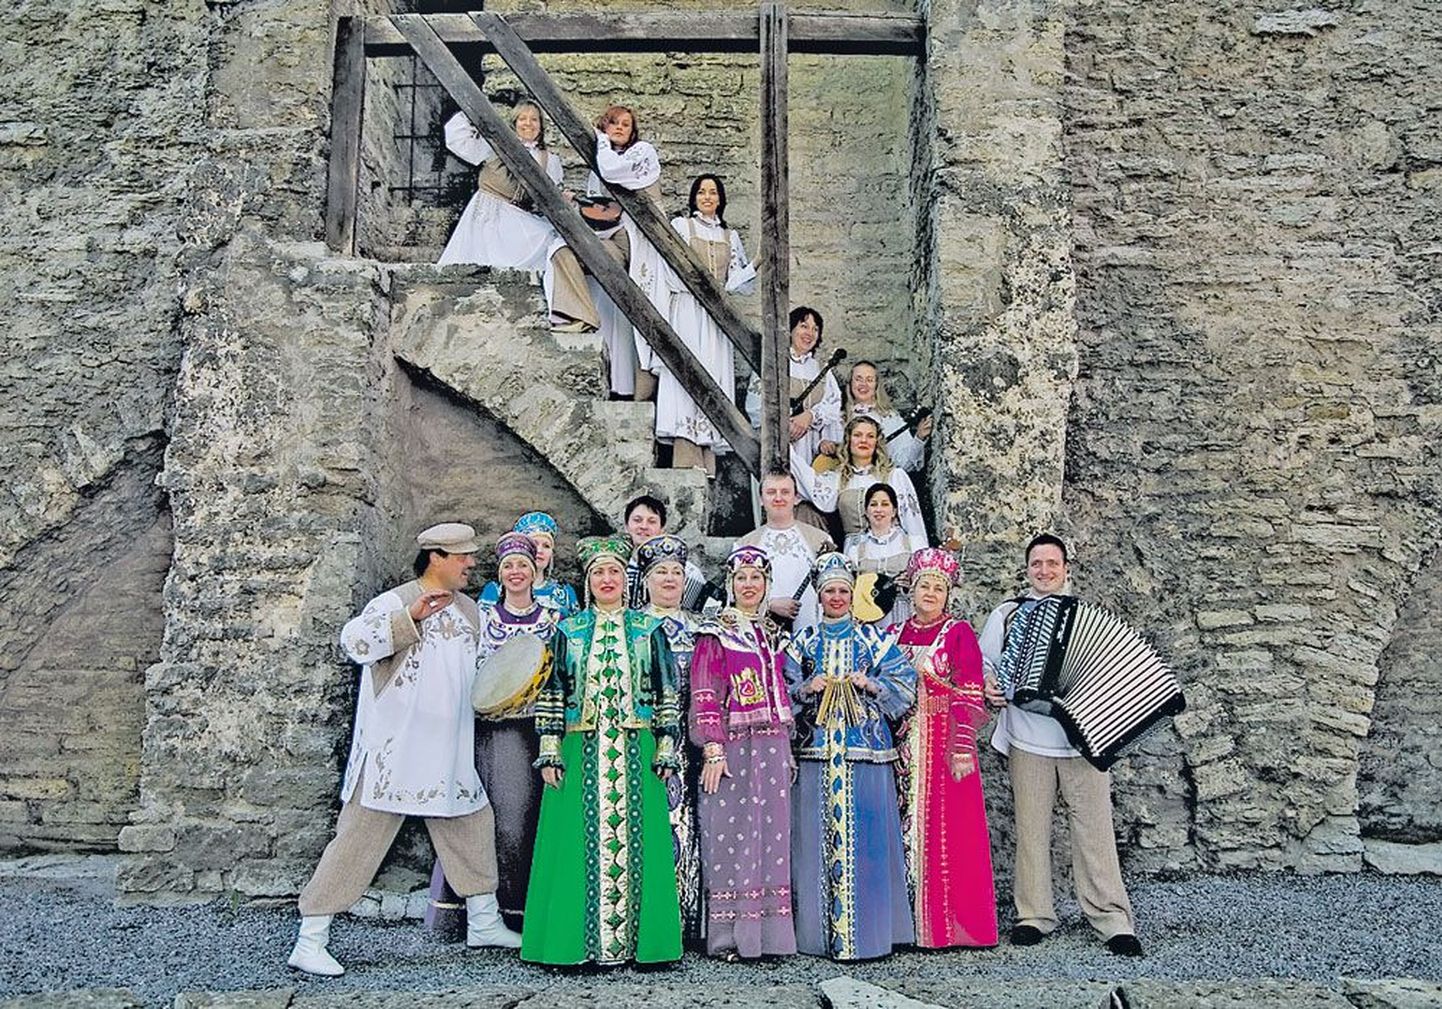 Ансамбль народной песни «Златые горы», который занимается в культурном центре «Линдакиви», выступает с концертами не только в Таллинне, но и в других регионах Эстонии, а также участвует в международных фестивалях.